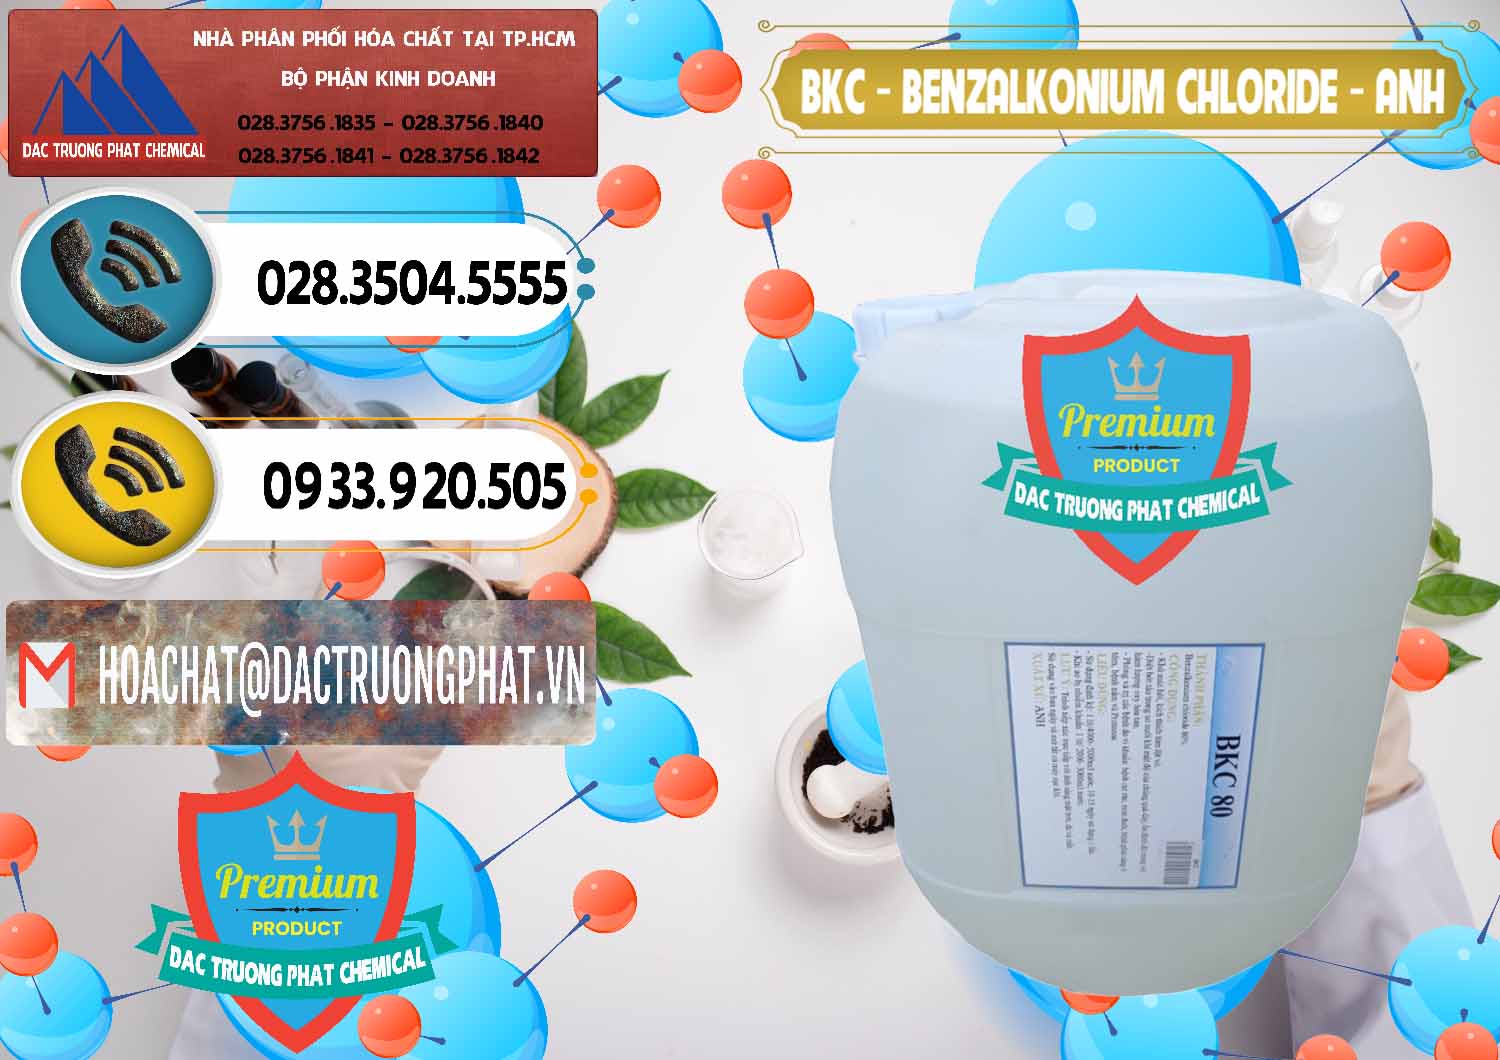 Nơi chuyên bán - cung ứng BKC - Benzalkonium Chloride Anh Quốc Uk Kingdoms - 0415 - Đơn vị chuyên phân phối _ bán hóa chất tại TP.HCM - hoachatdetnhuom.vn